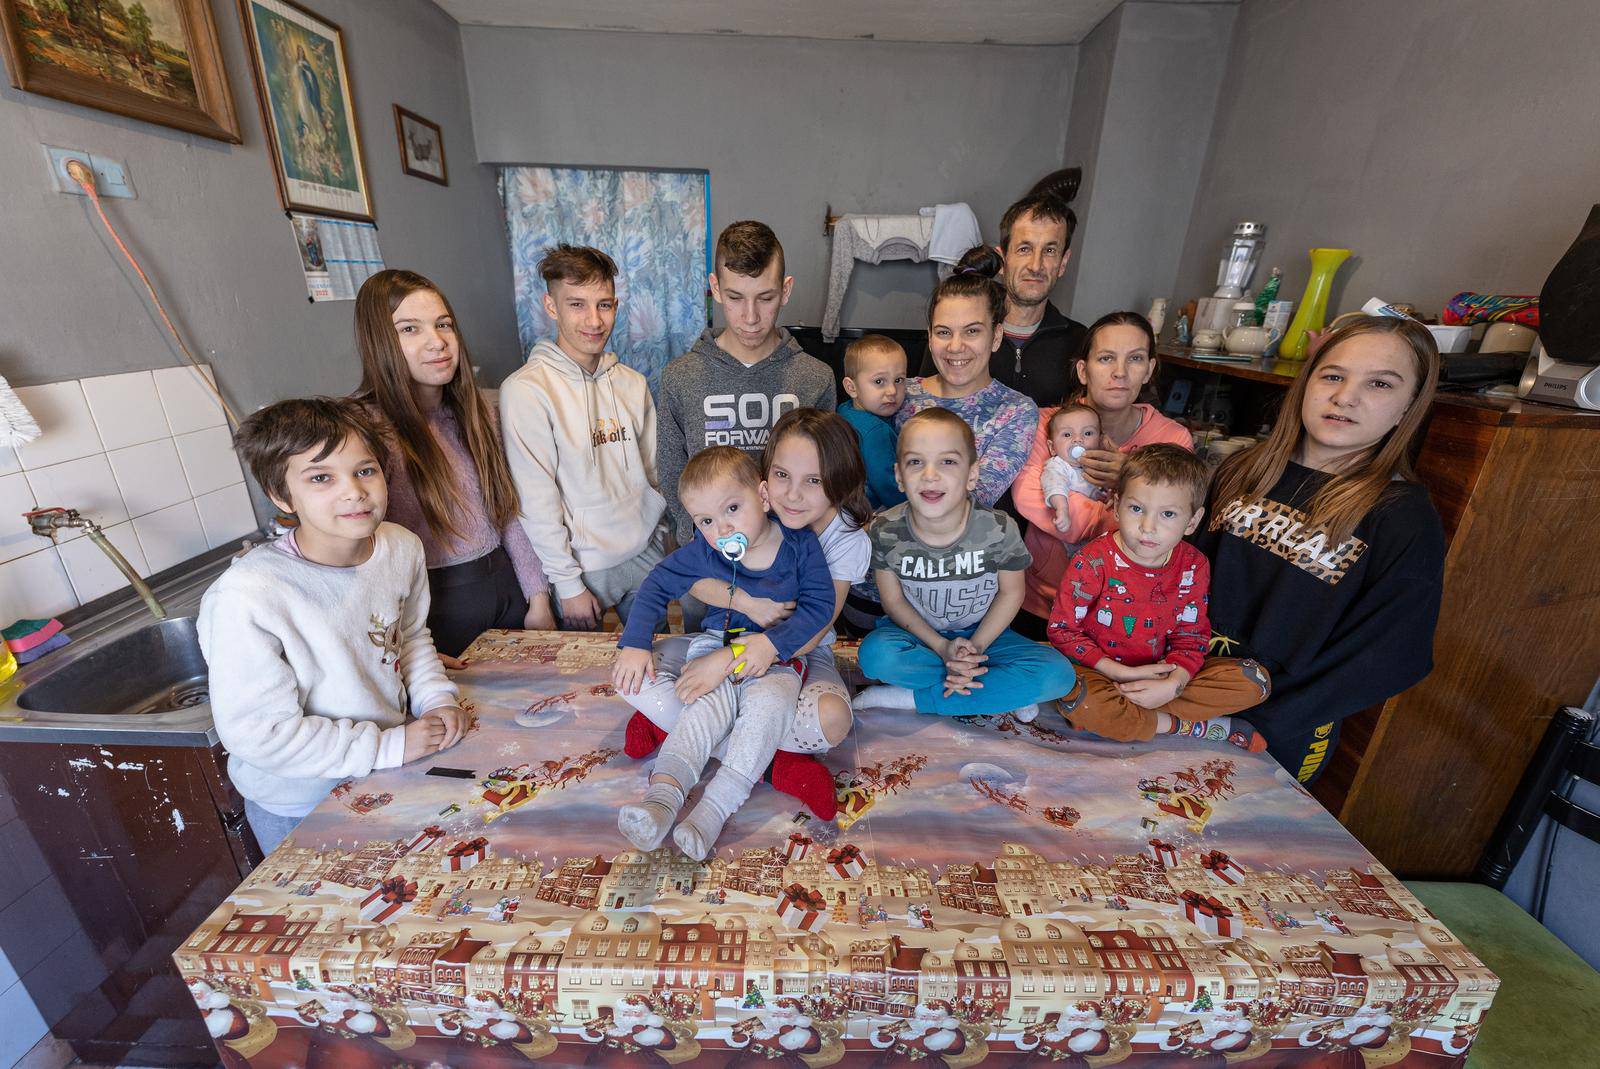 Stari Mikanovci: Obitelji Tomešić ima 13-tero djece, a najmlađe je staro dva mjeseca